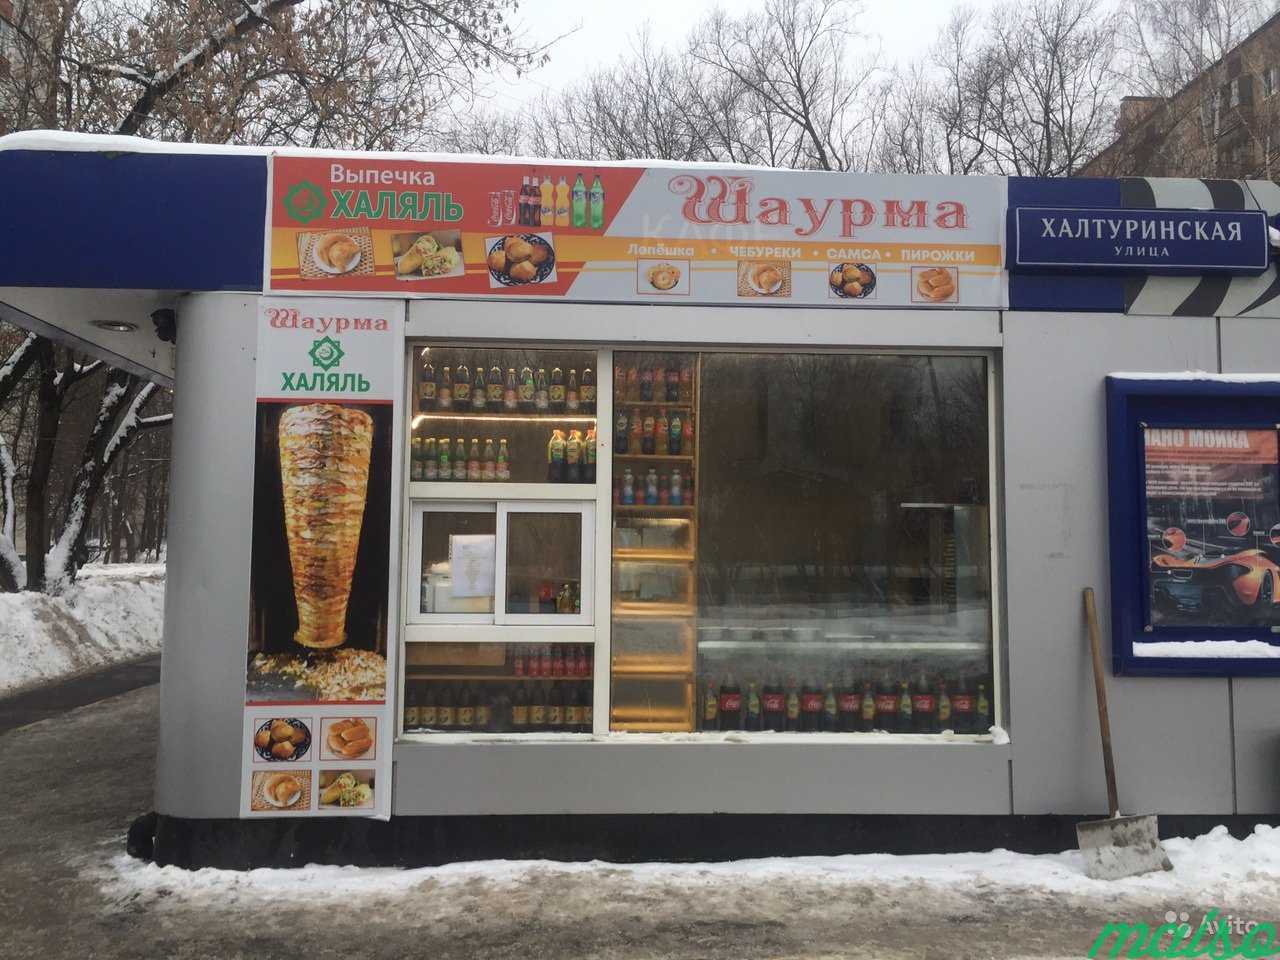 Шаурма, выпечка, готовый бизнес в Москве. Фото 2